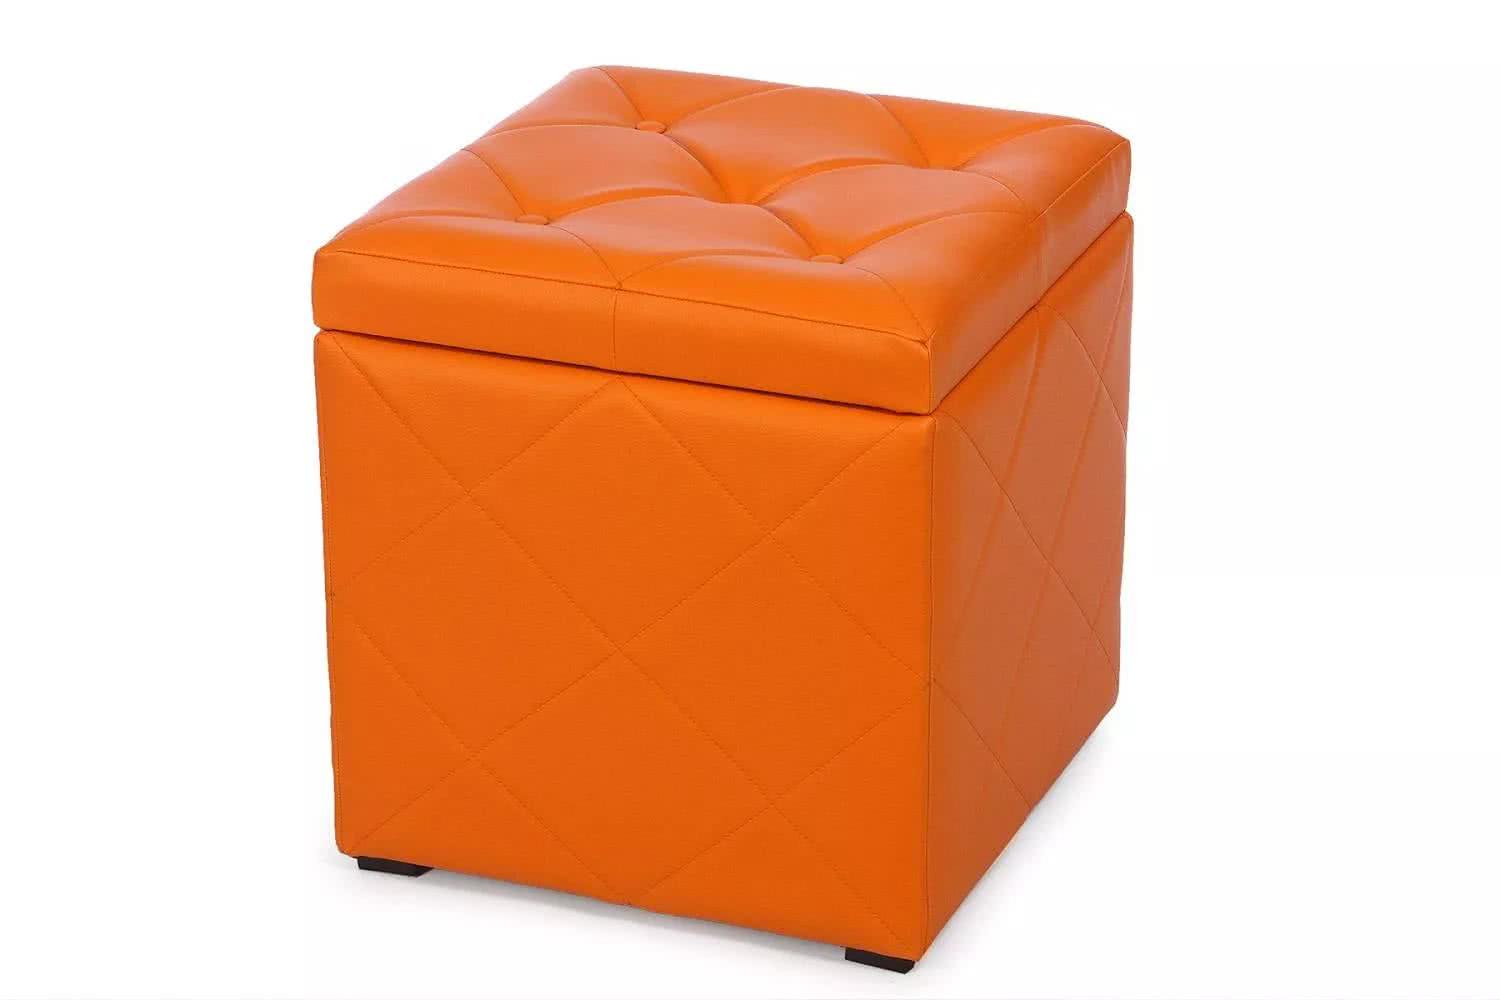 Пуф Мебельстория Ромби-2 Оранжевый от производителя — цены фабрики, доставка